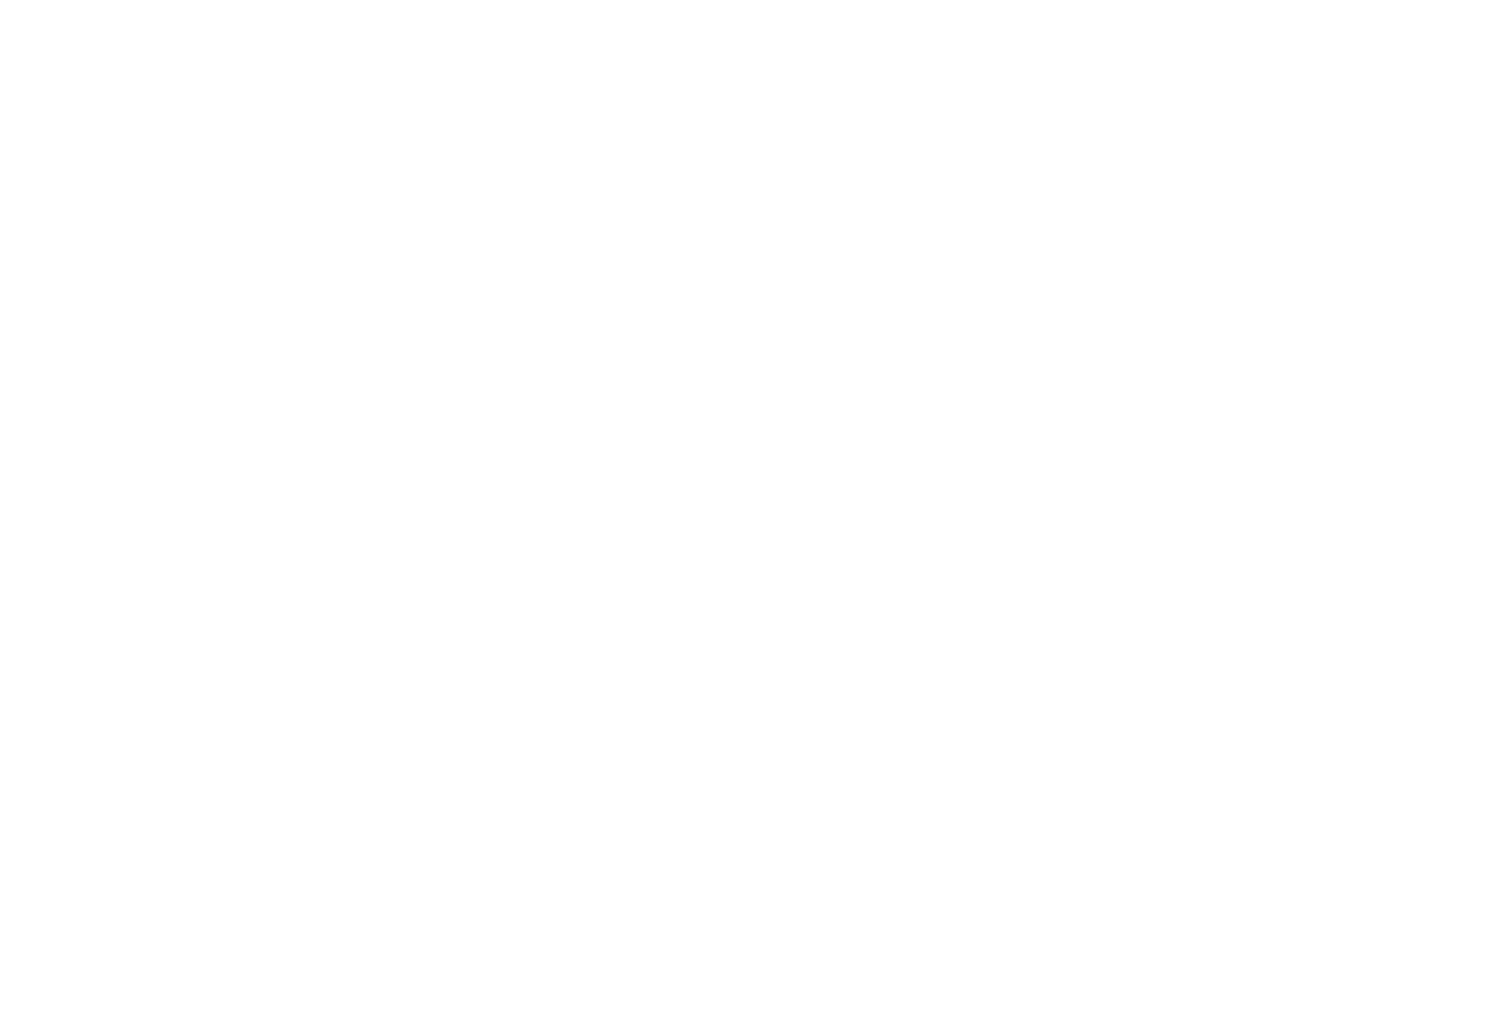 Shiloh Dobie Design